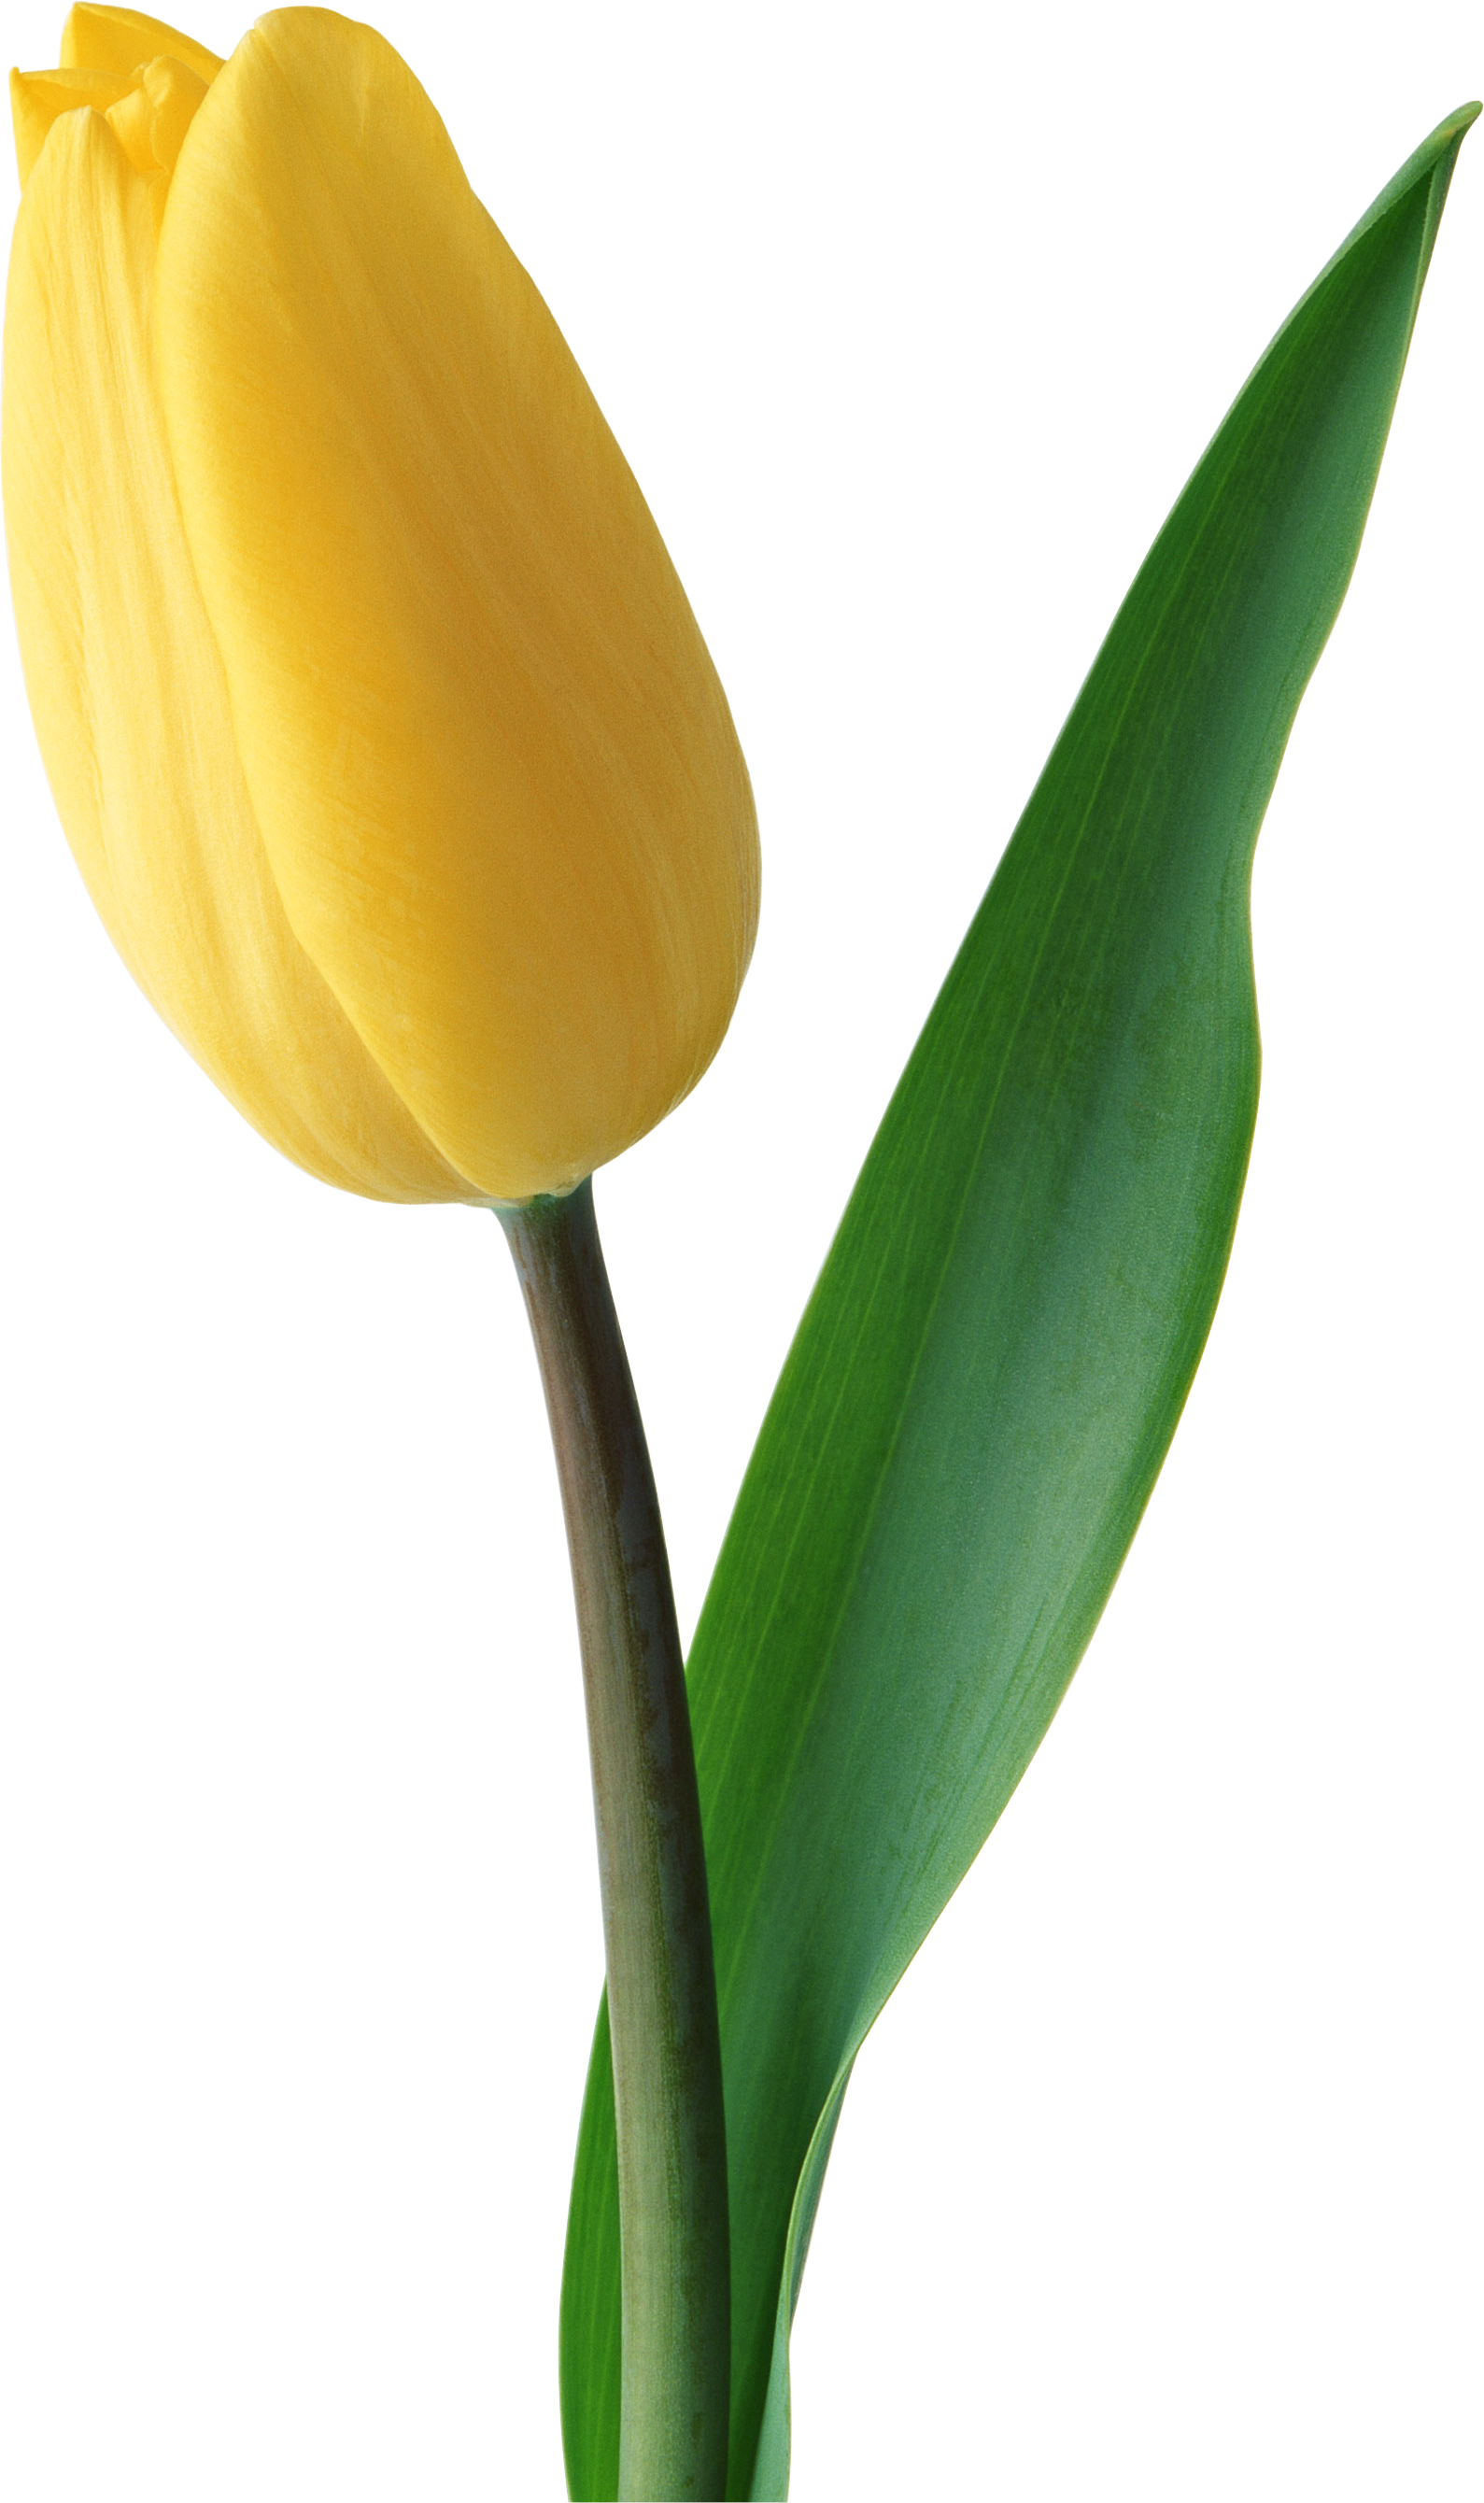 Tulipe jaune